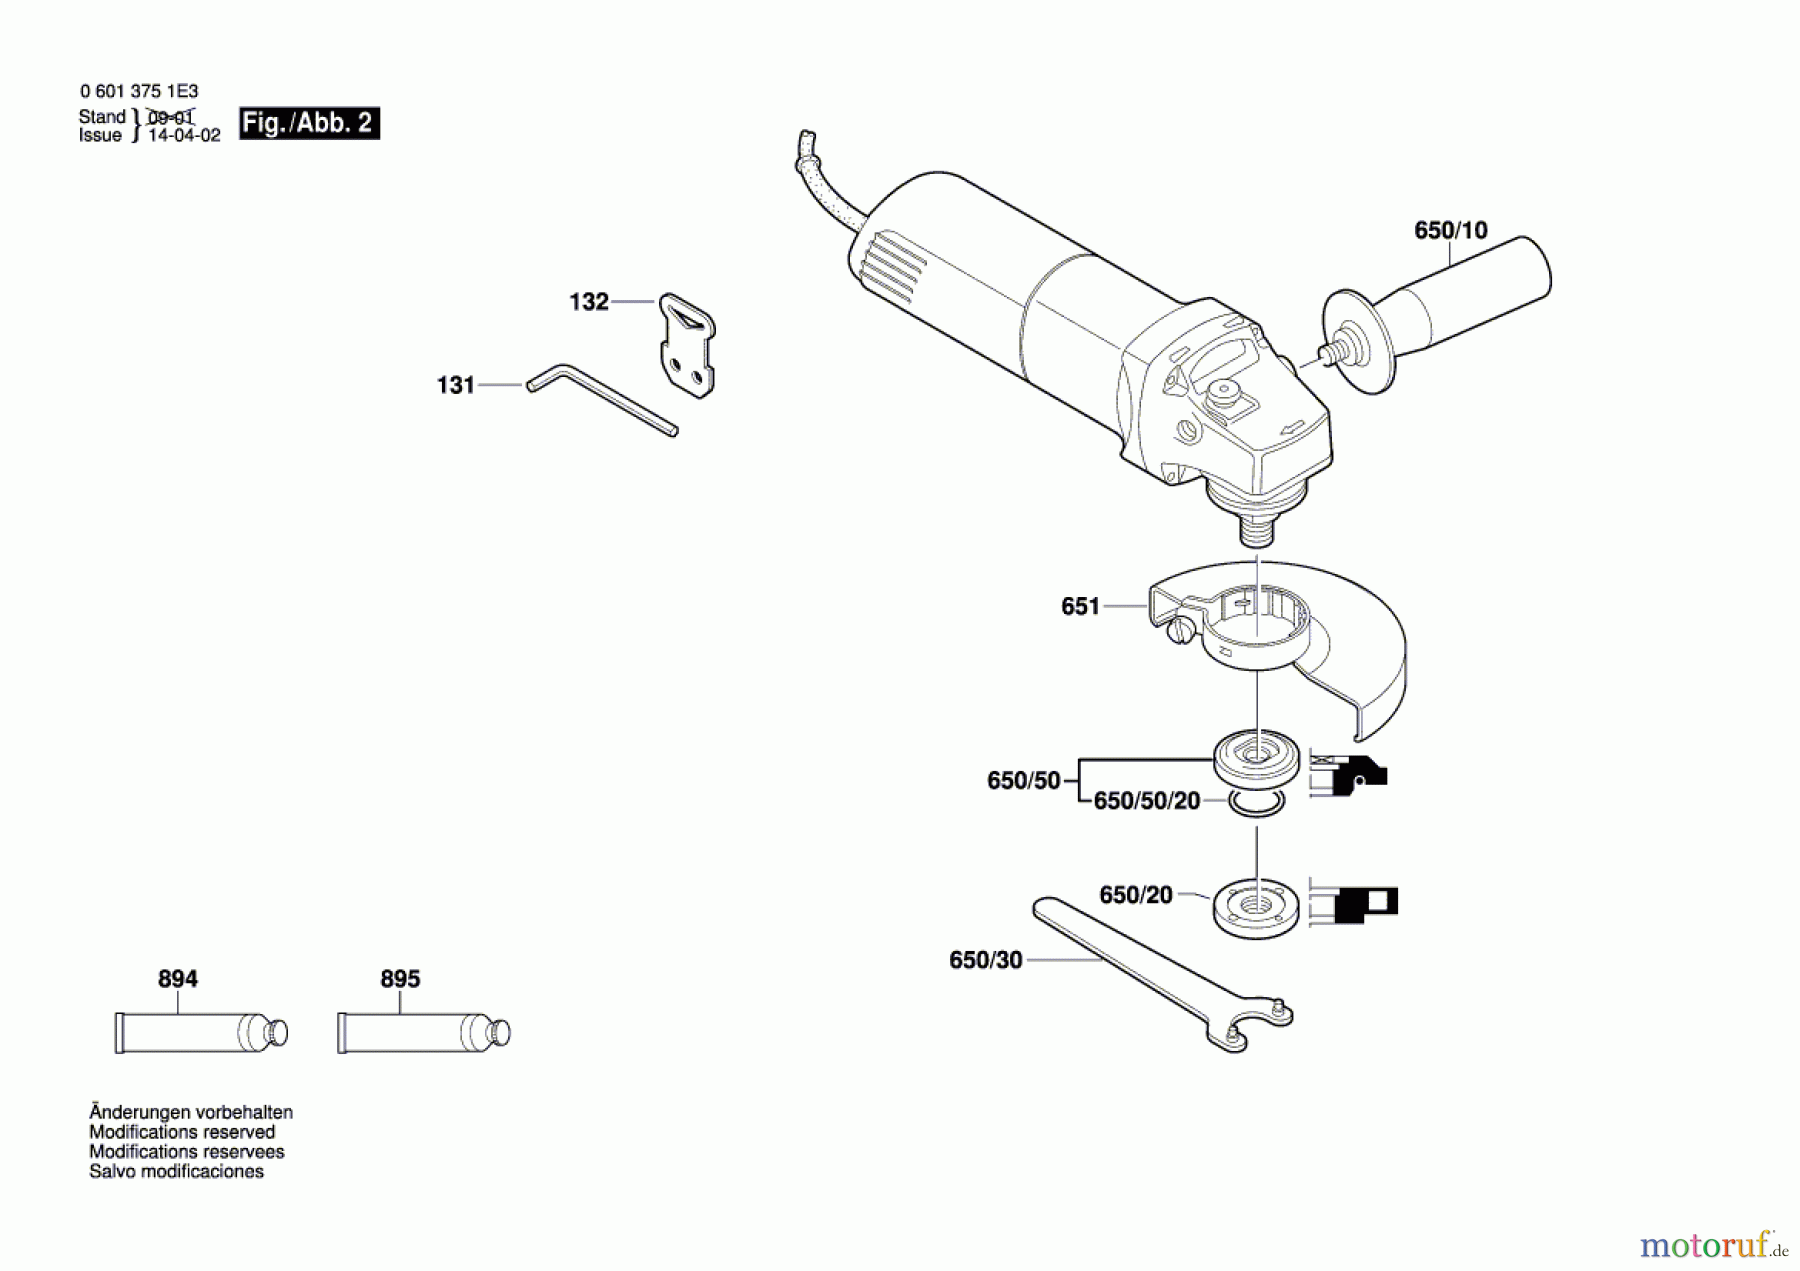  Bosch Werkzeug Winkelschleifer GWS 6-125 Seite 2